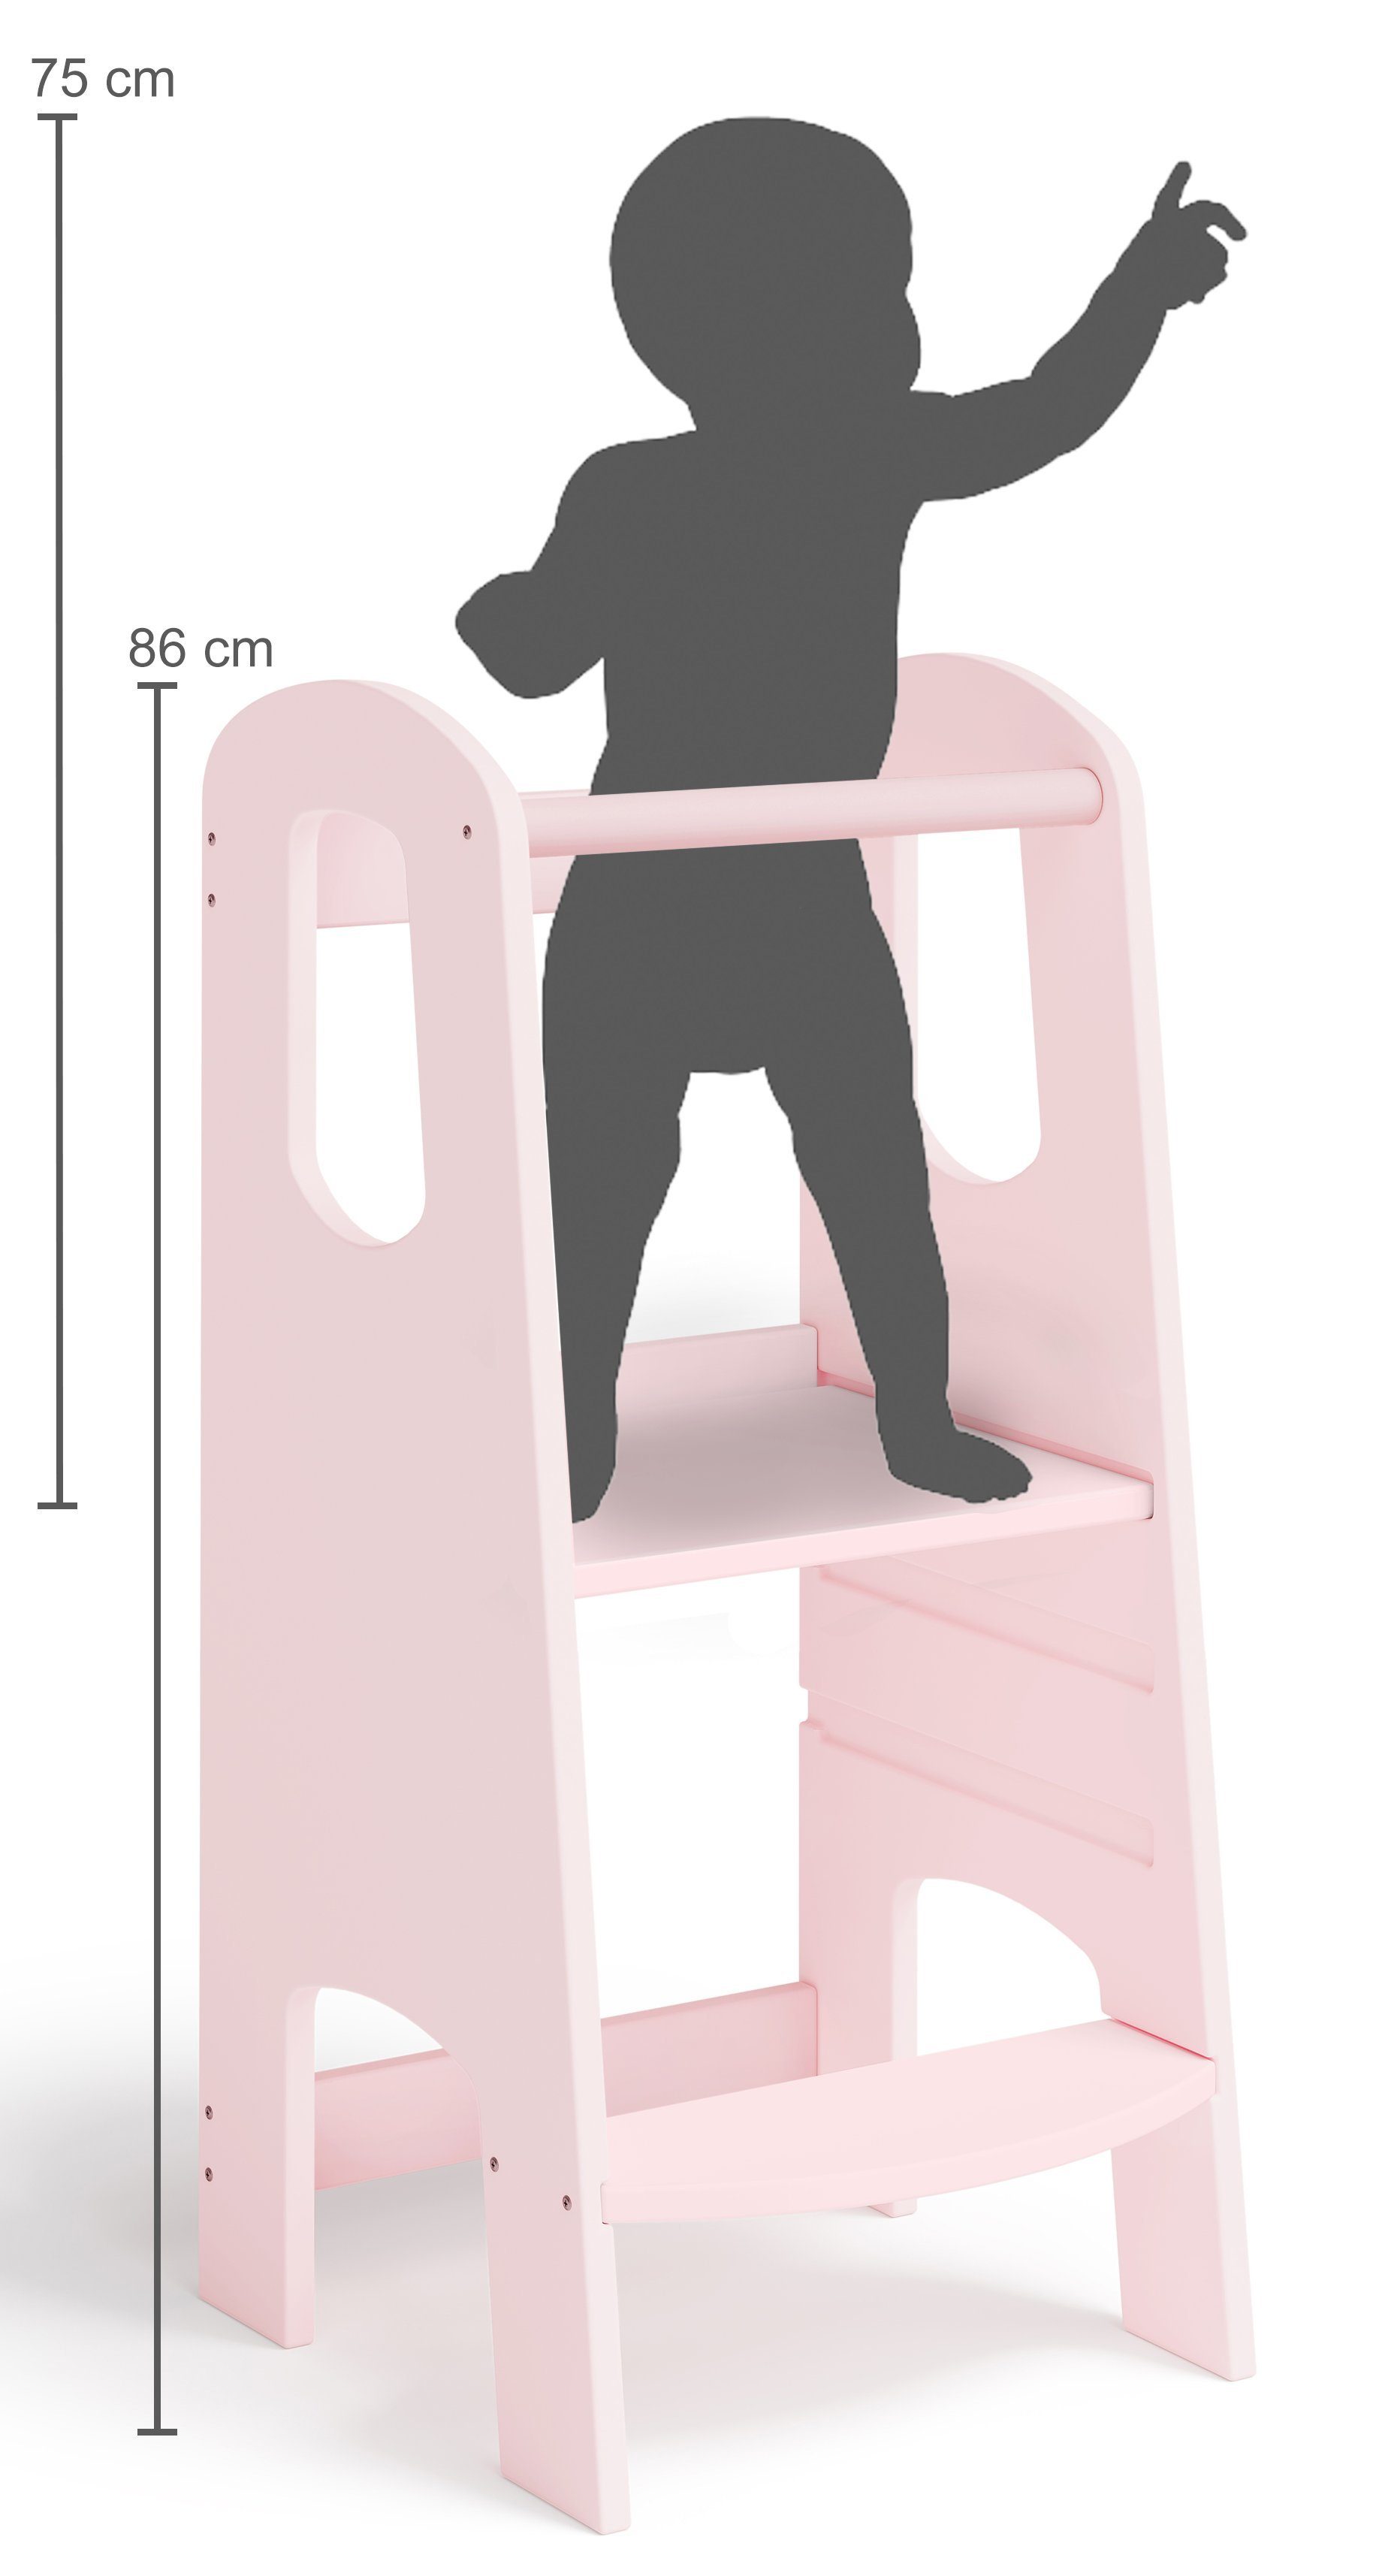 Bellabino Stehhilfe Lernturm Luni, 3-fach aus Birke Sperrholz, höhenverstellbar, rosa